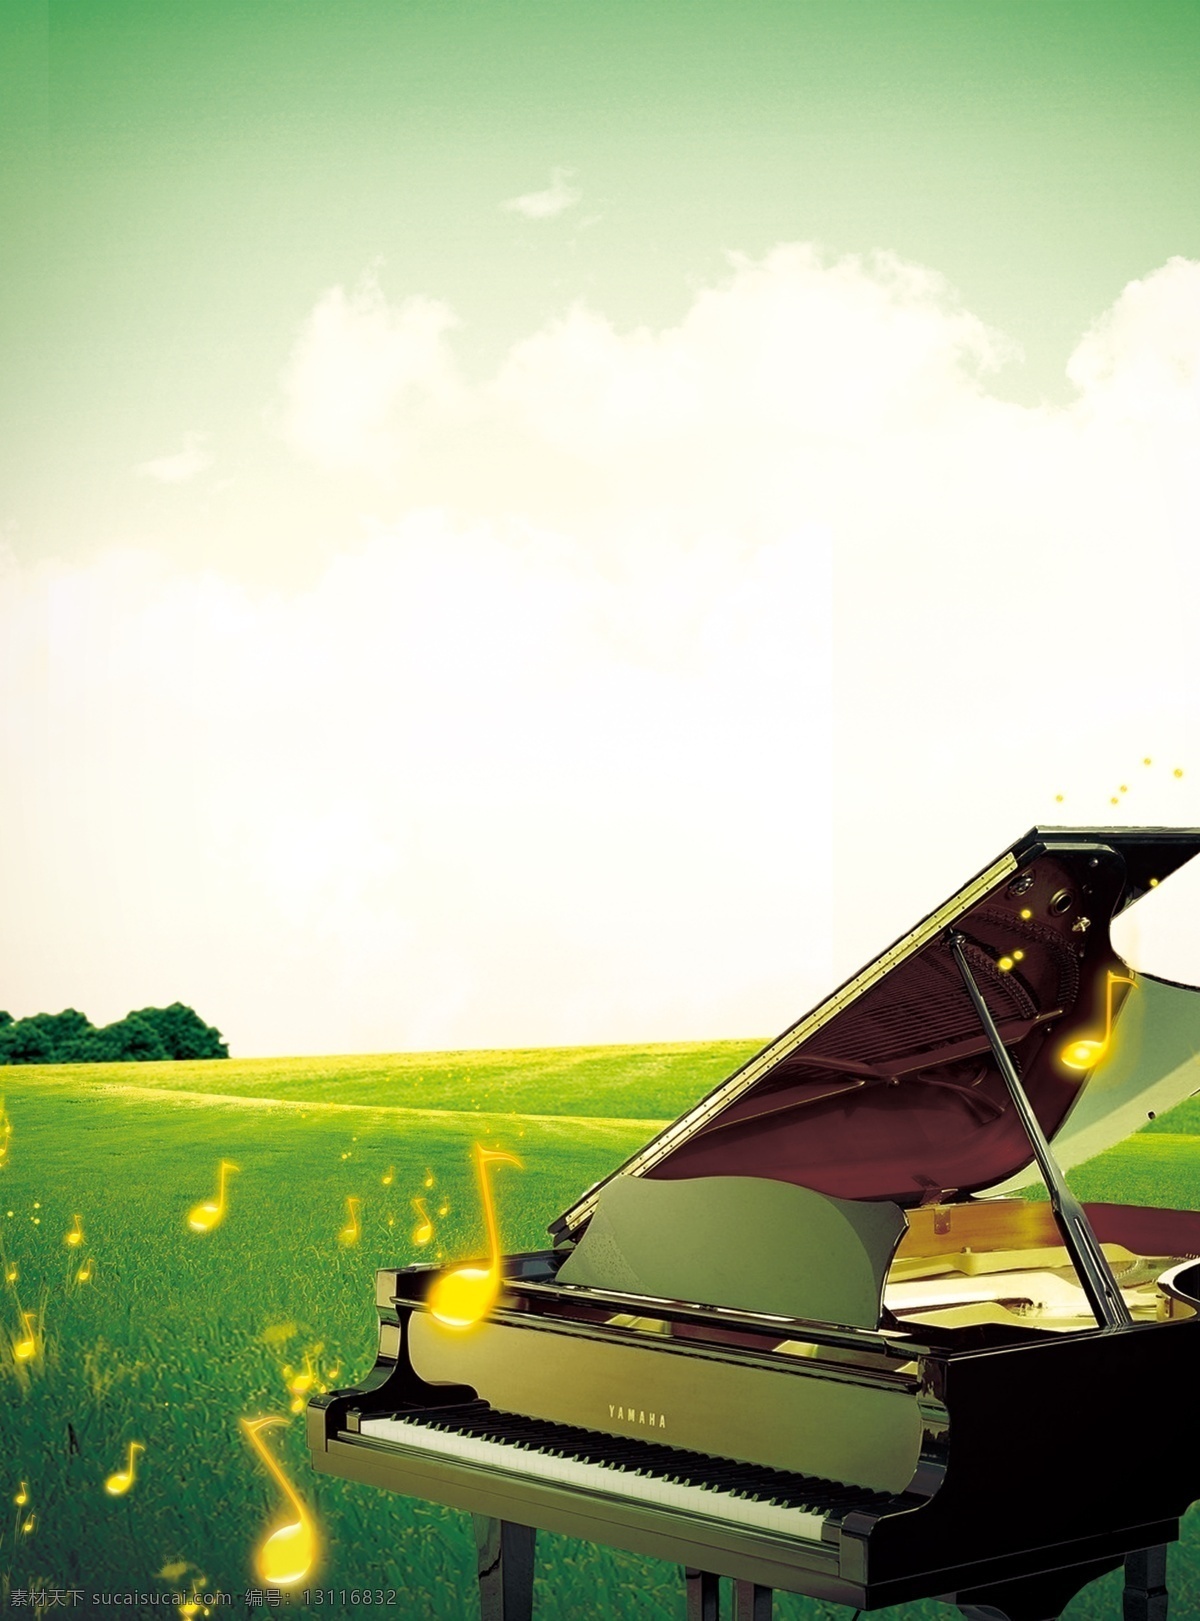 钢琴 旋律 草地 春天 广告设计模板 培训 艺术 钢琴的旋律 音乐 音符 源文件 其他海报设计